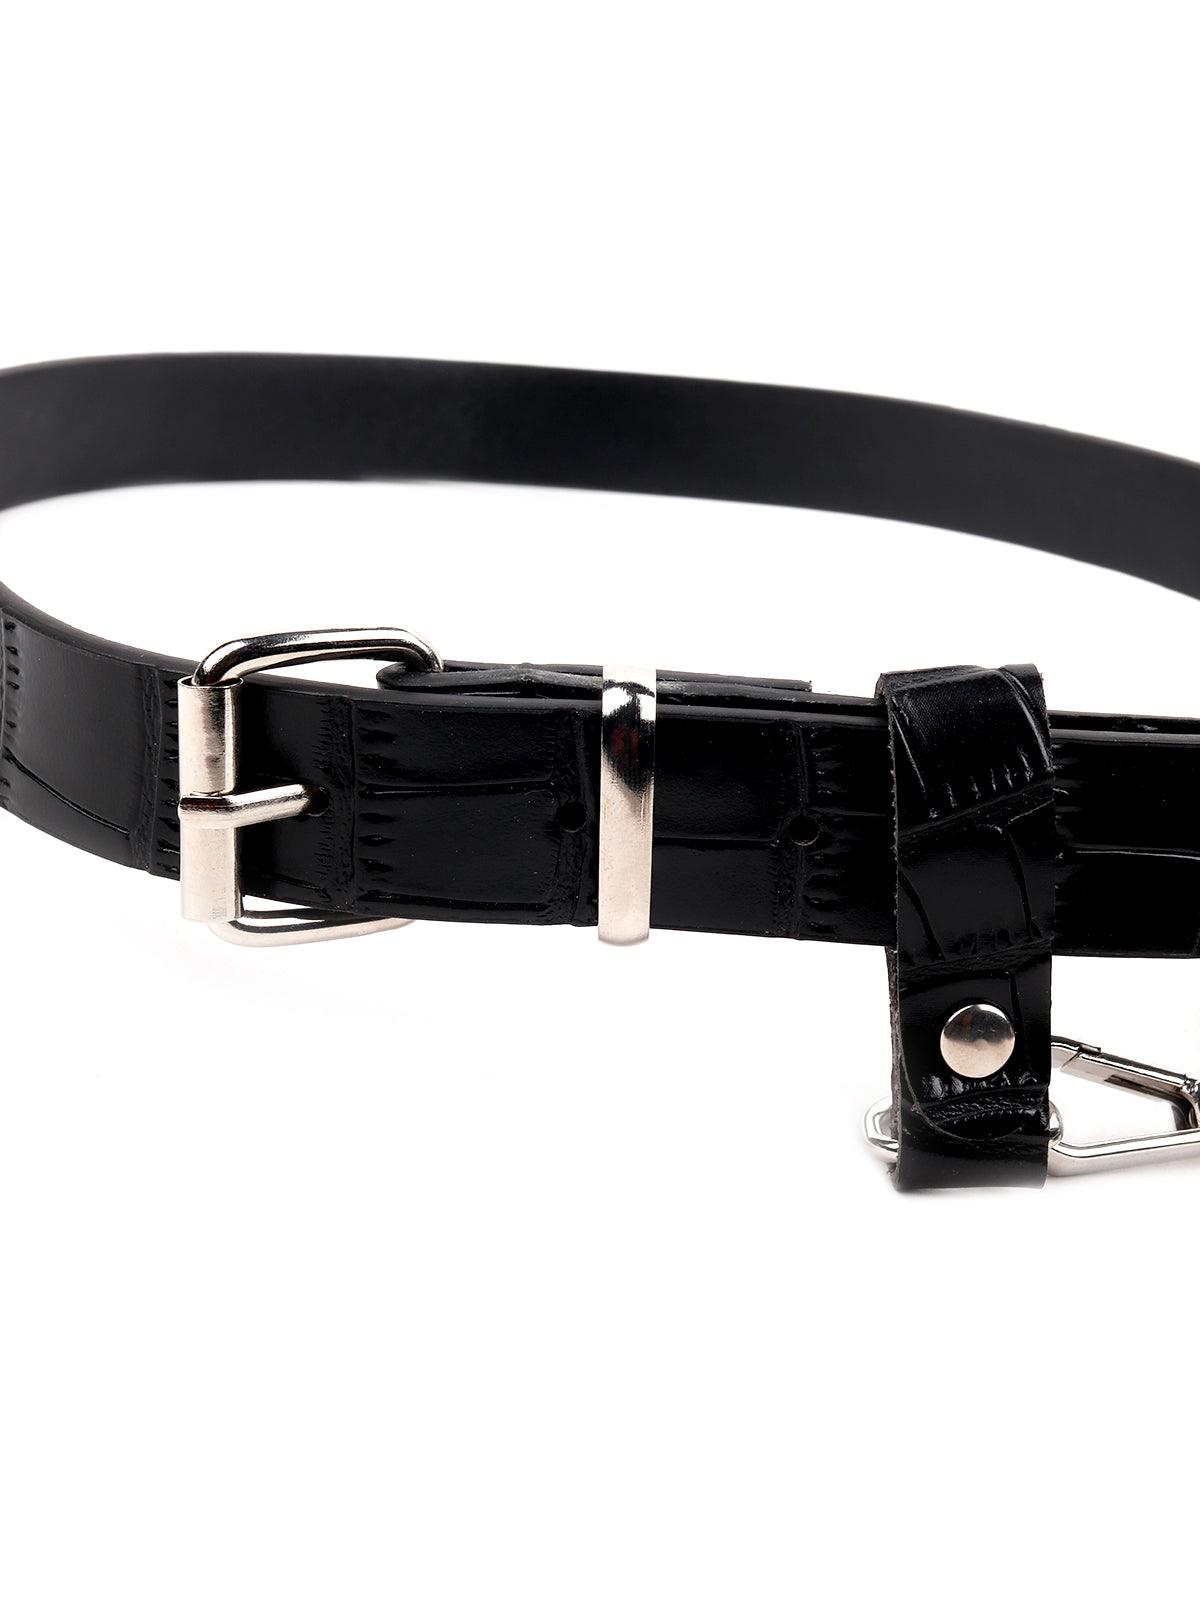 Black croc printed belt bag embellished with a silver chain - Odette